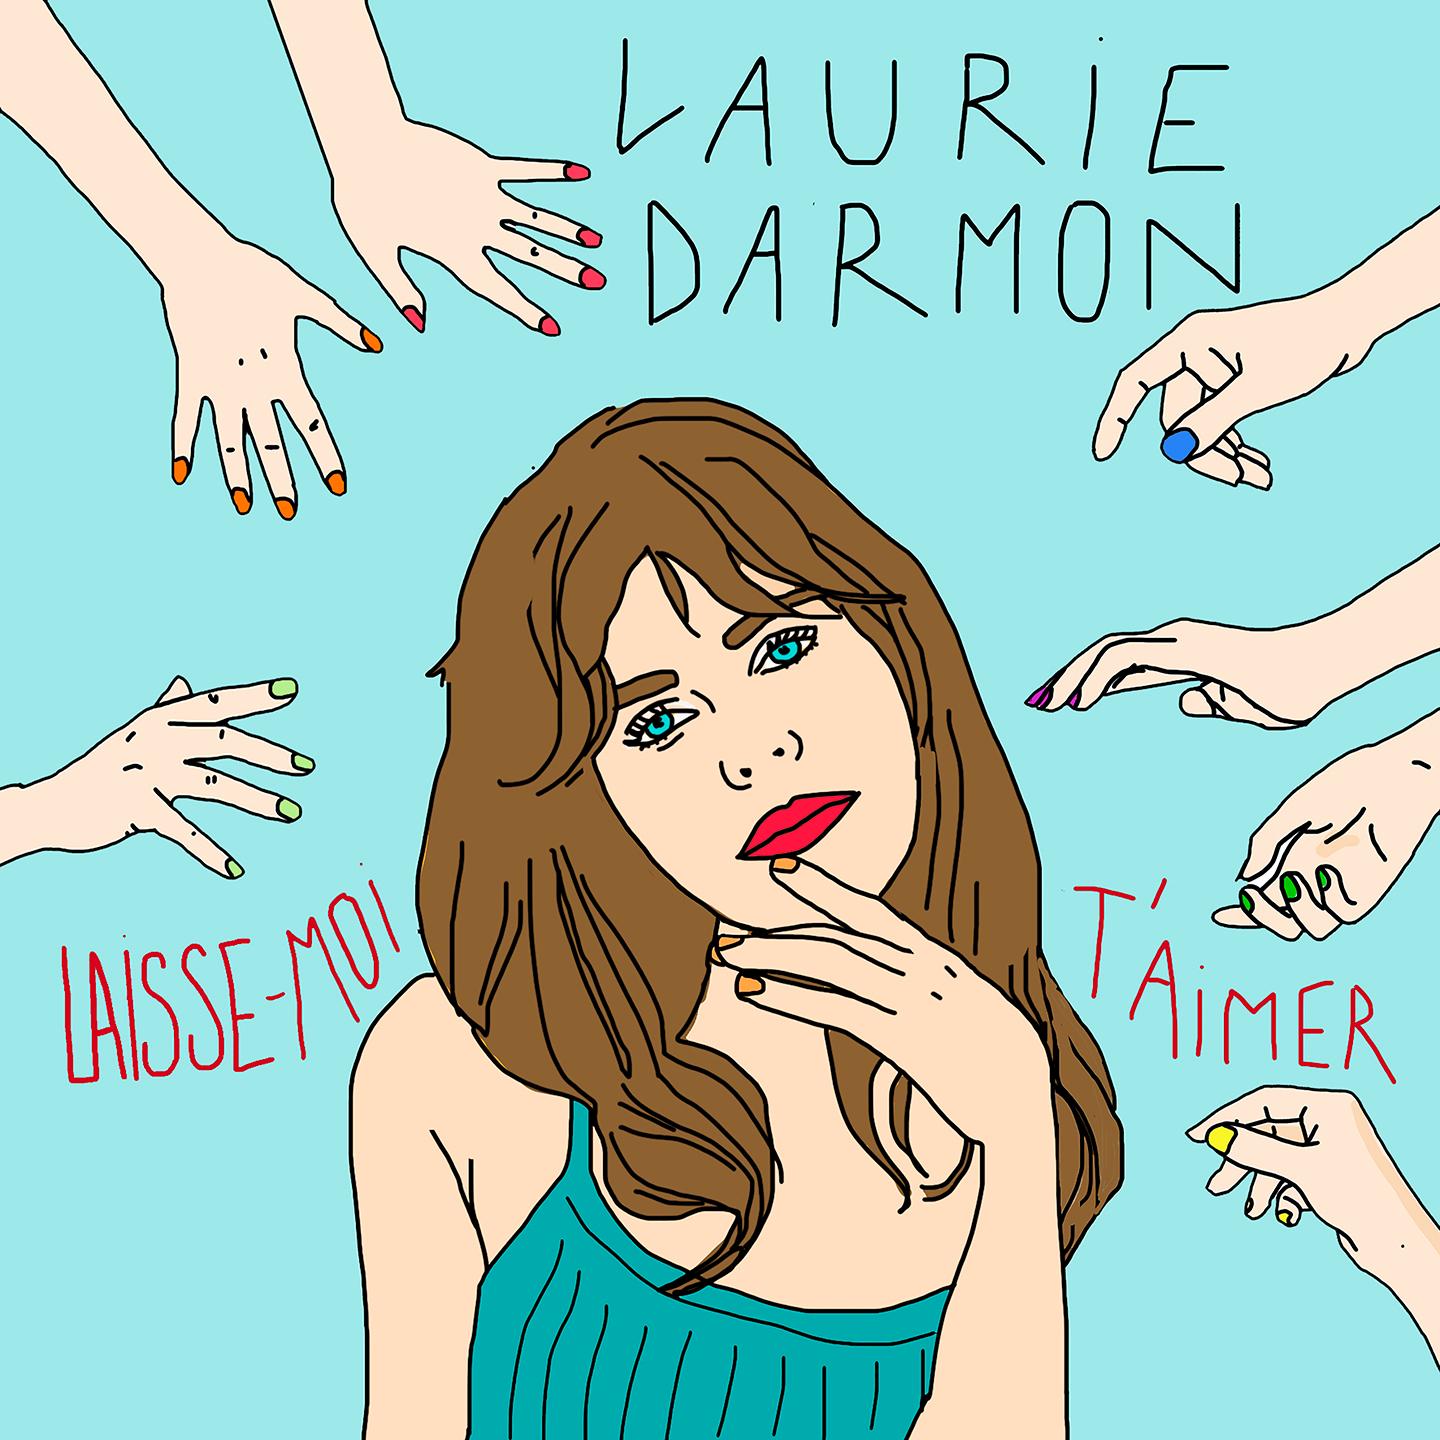 Ri-scoperto dai canali social, il nuovo che avanza è francese Laurie Darmon e il singolo Laisse-moi t’aimer (Label Time Records/distribuzione Believe)